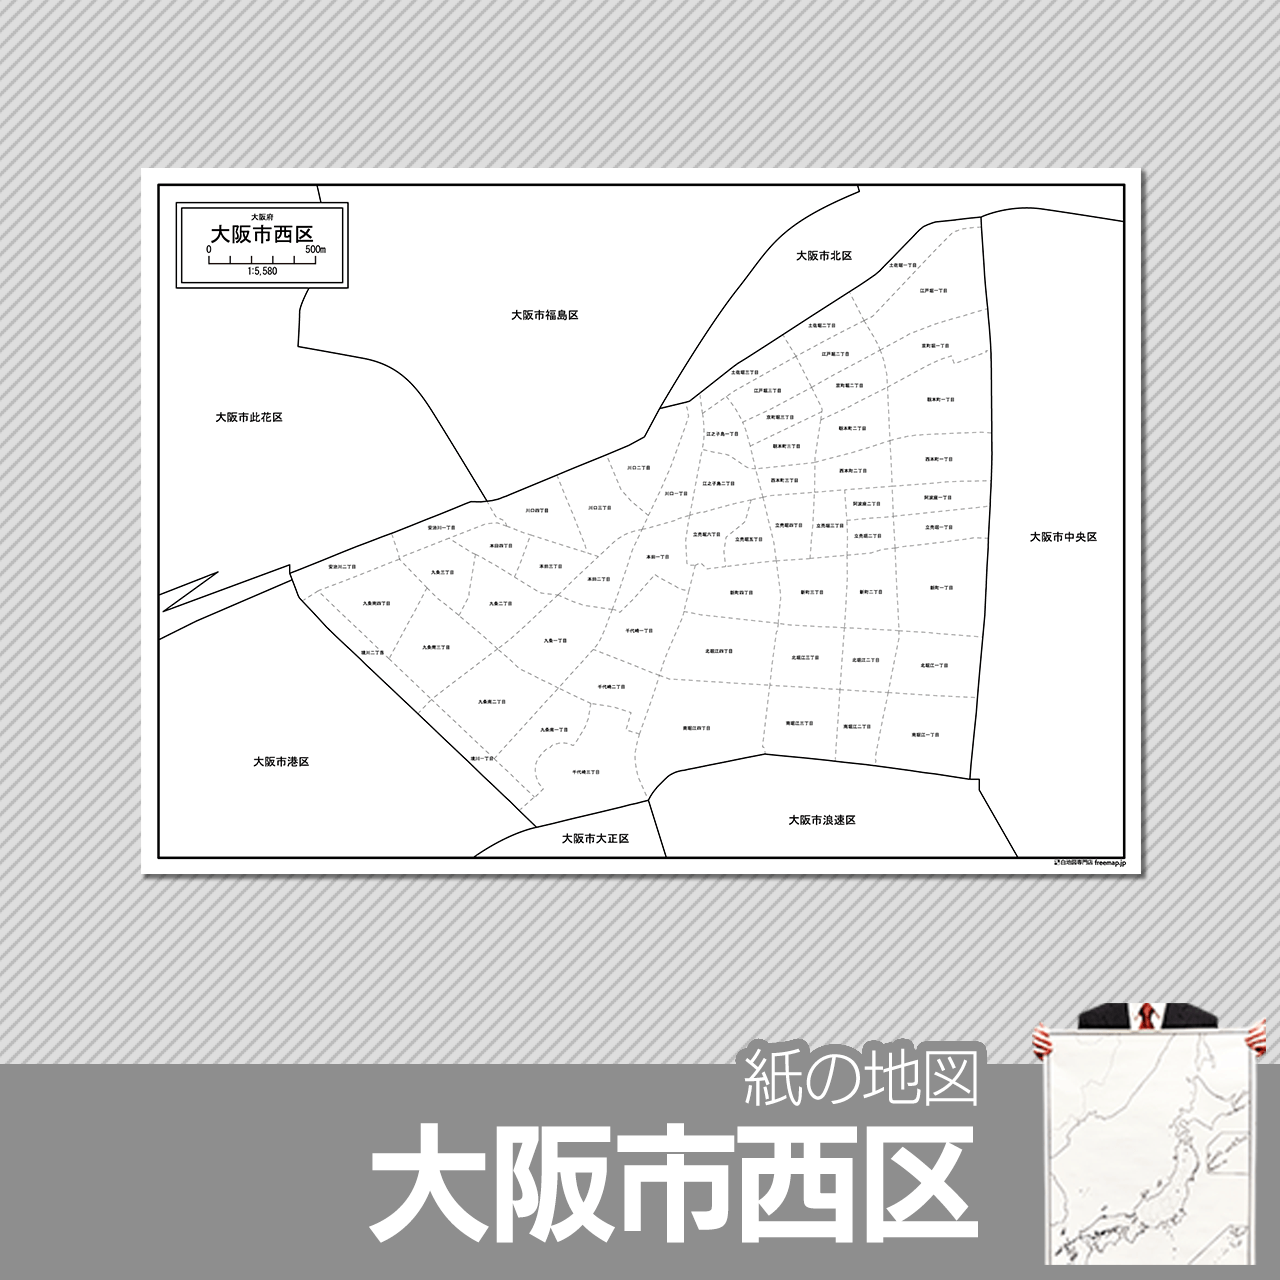 大阪市西区の紙の白地図のサムネイル